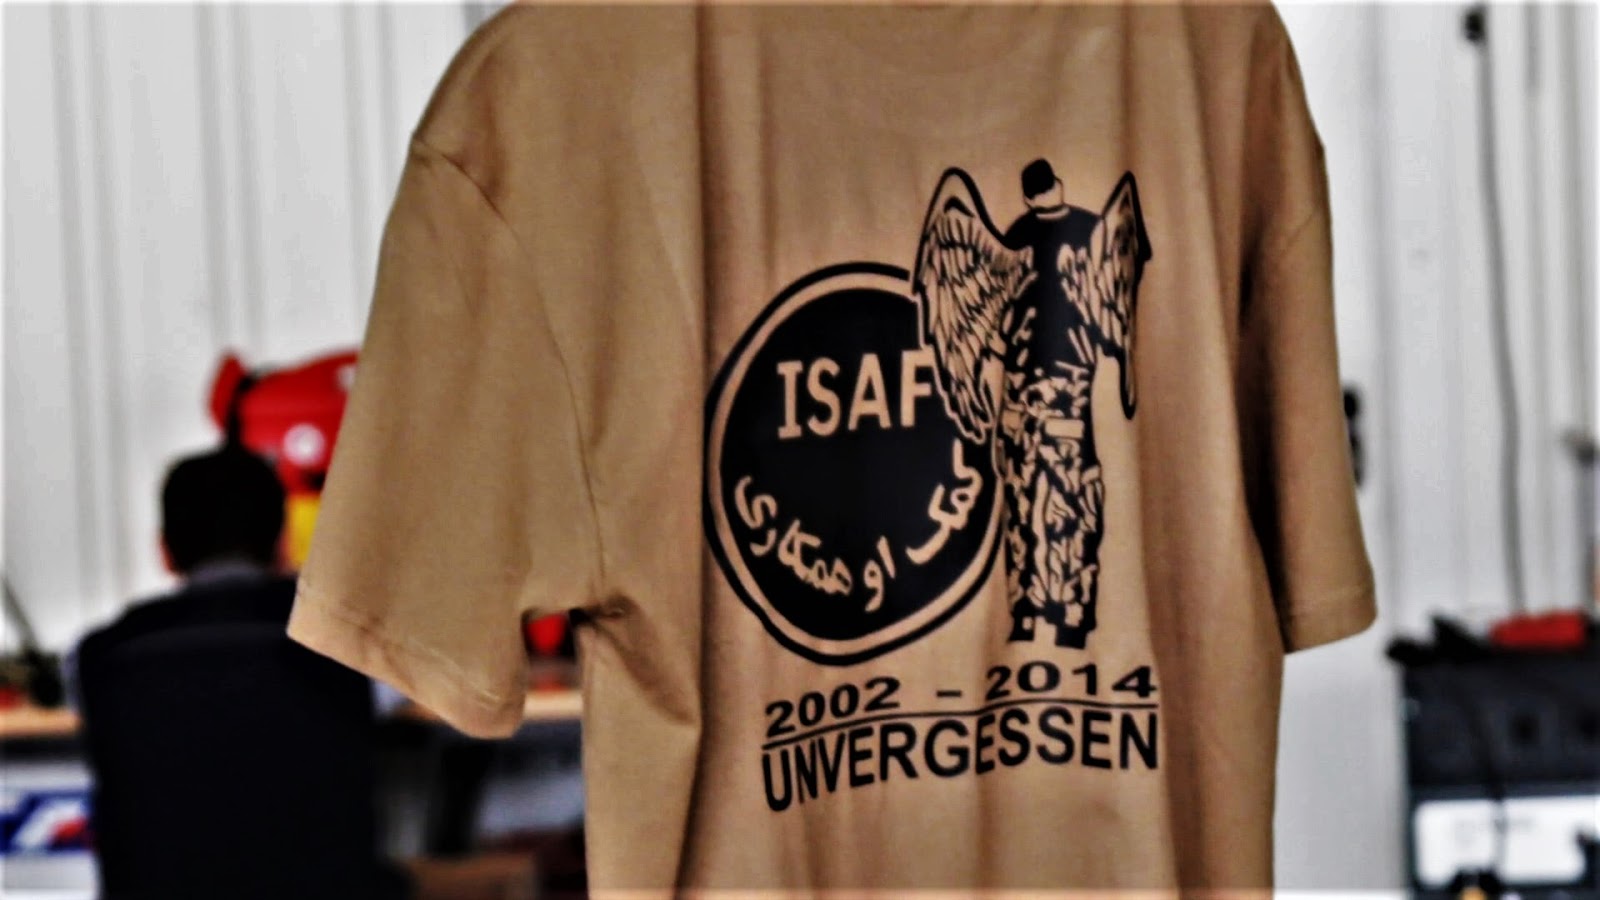 ISAF Einsatzshirt für gefallene Soldaten